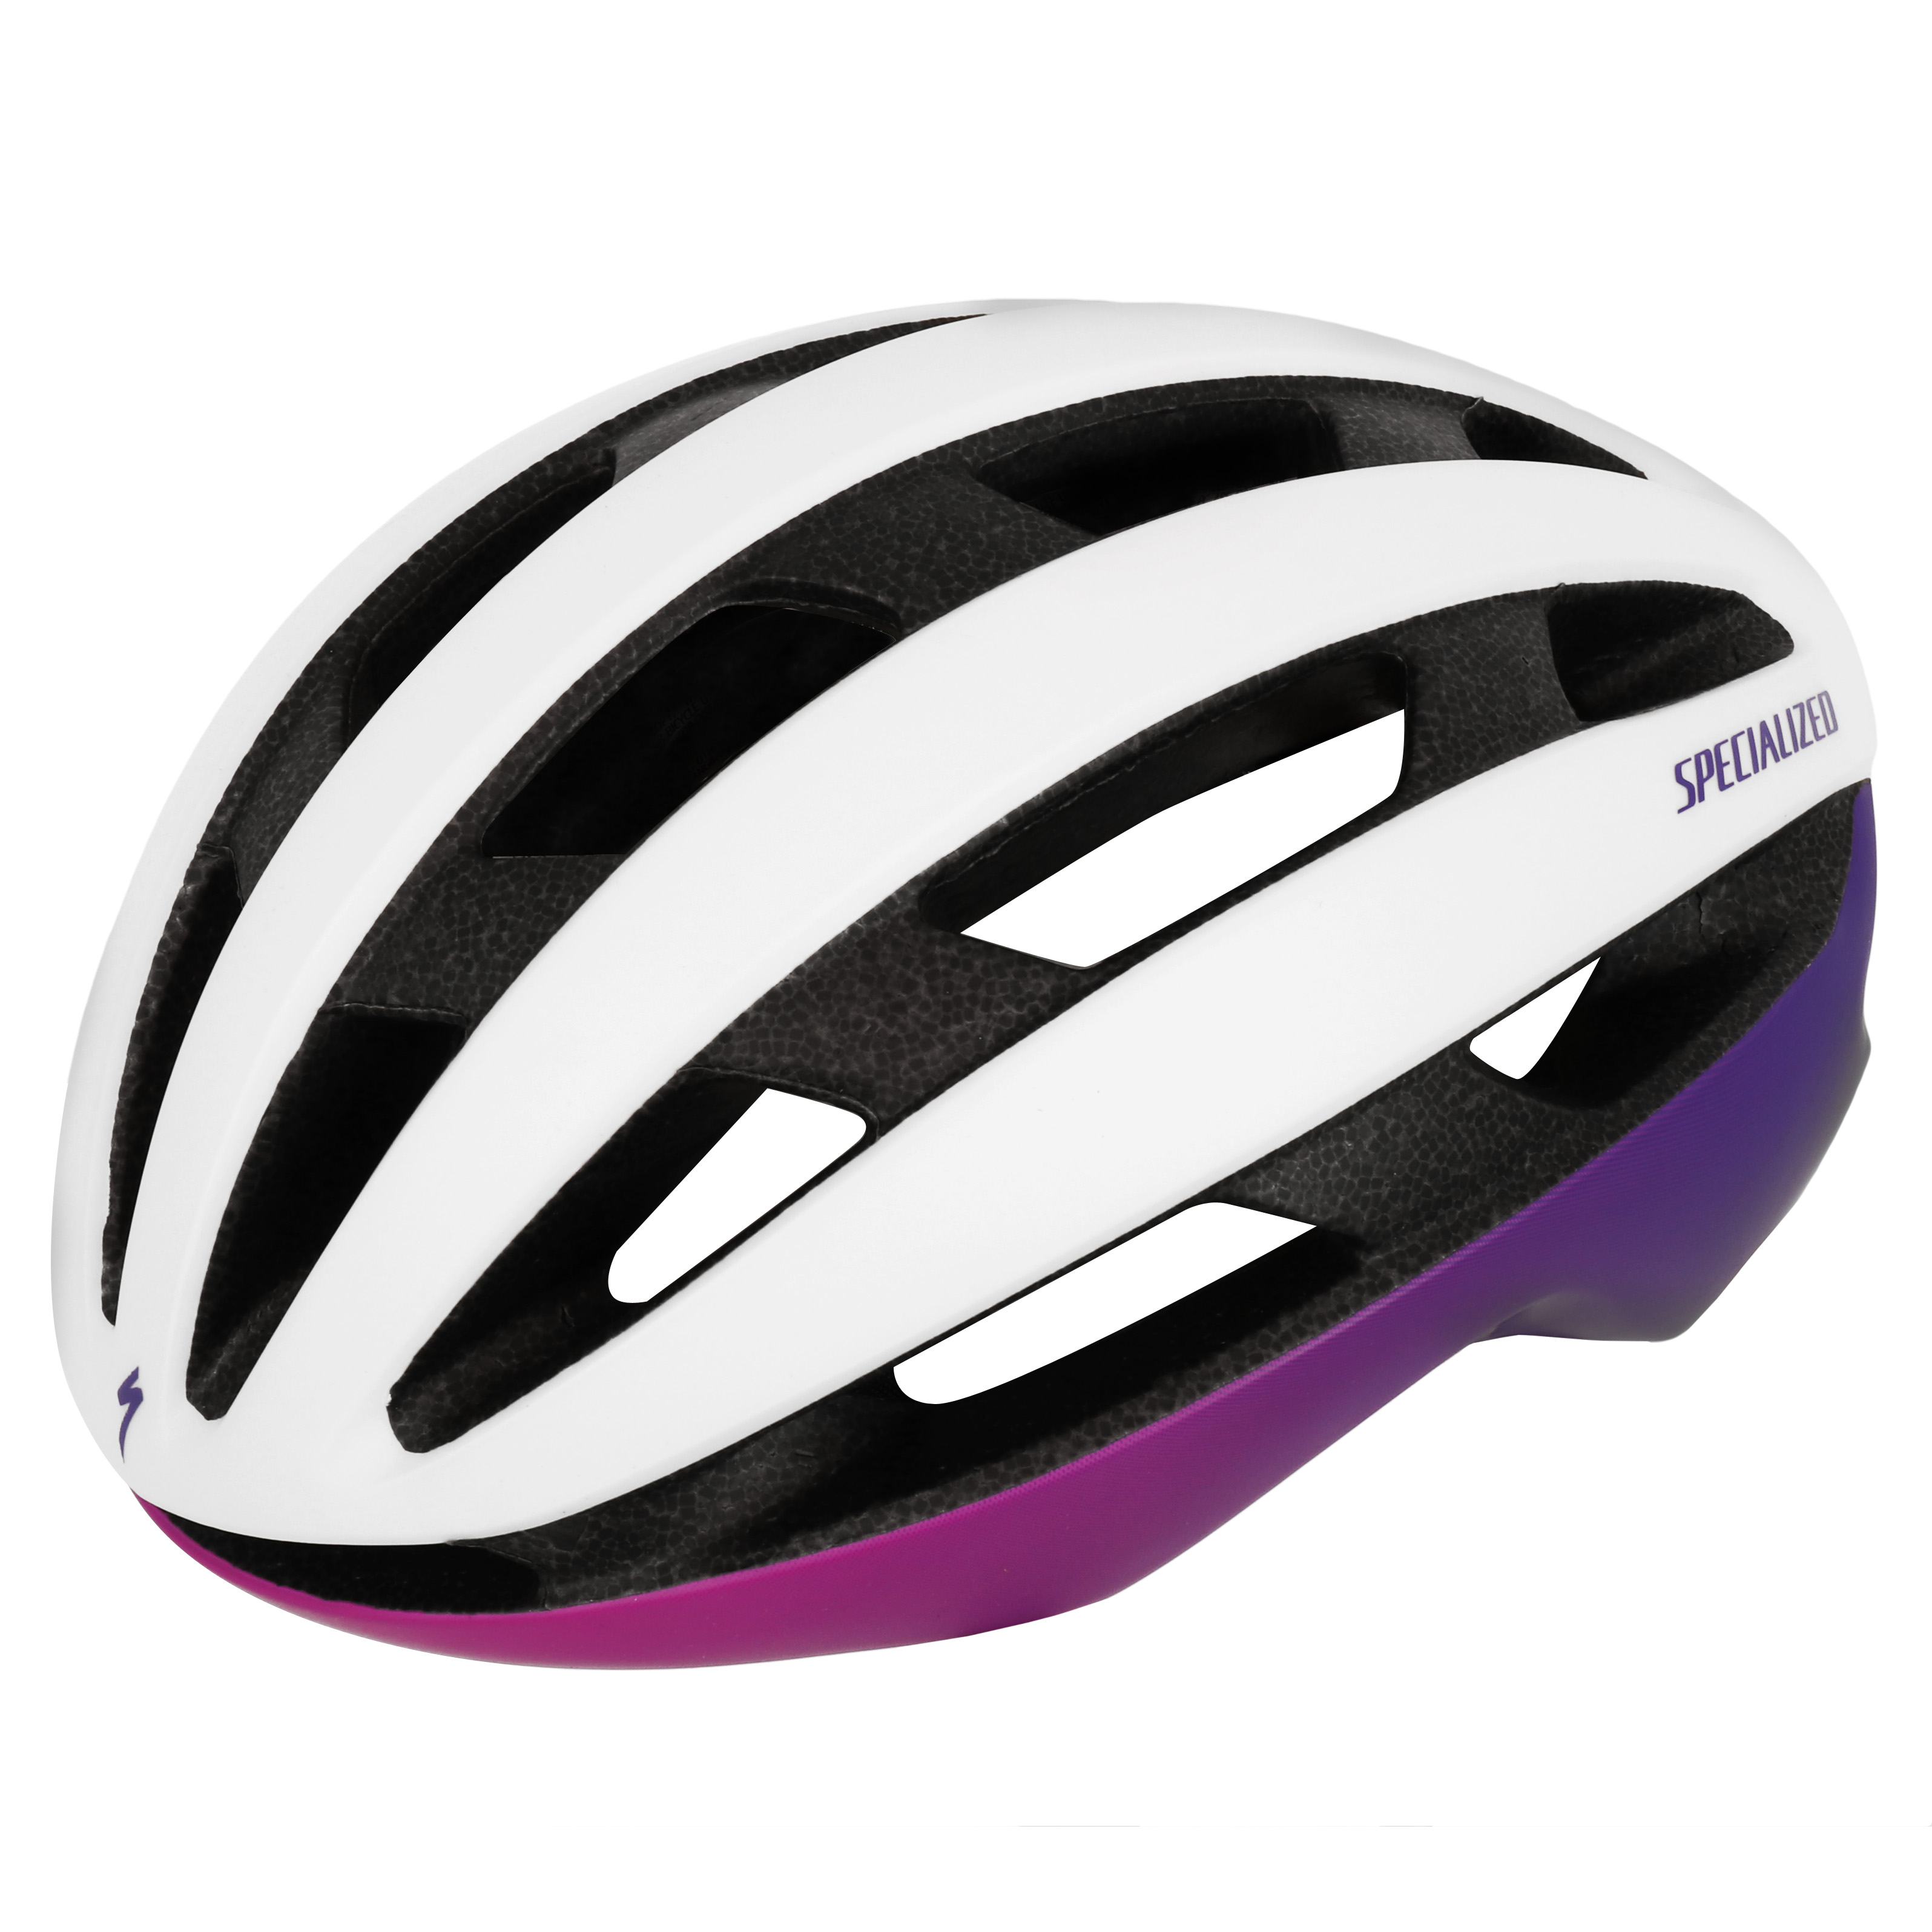 Produktbild von Specialized Airnet MIPS Helm - Dune White/Purple